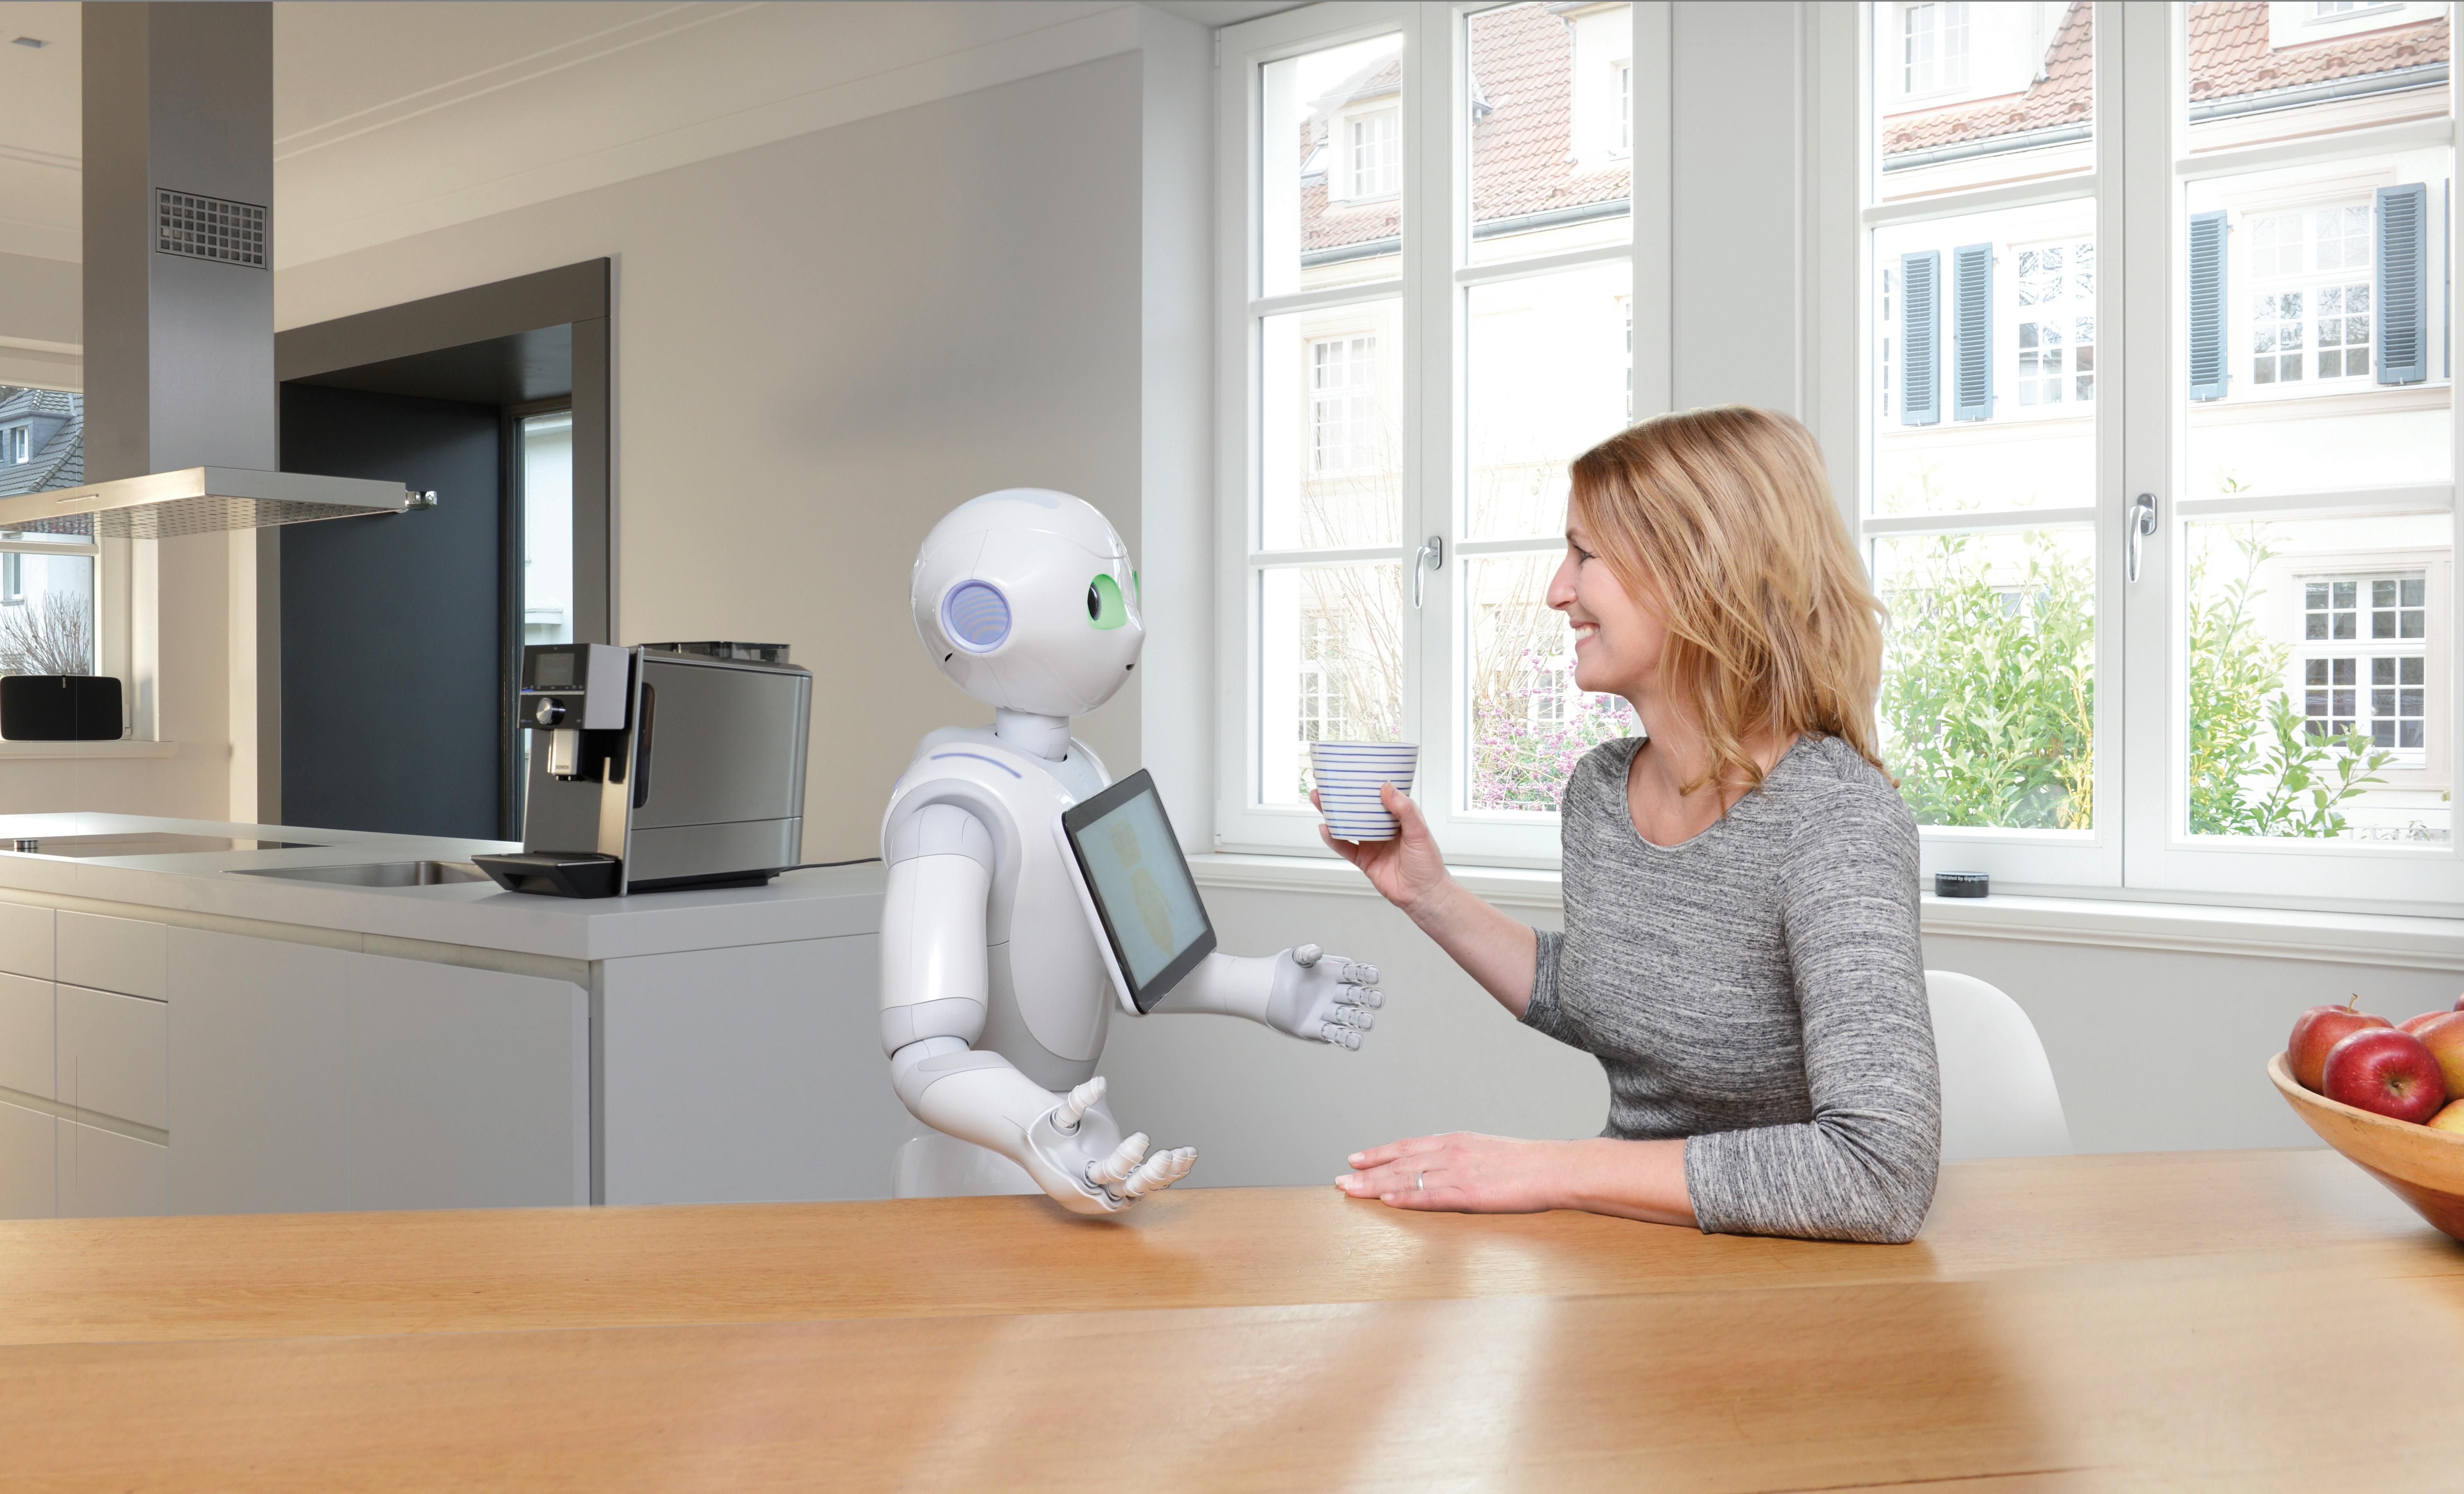 Ein Roboter, der den Kaffee zubereitet und serviert? Der in der Lage ist, die Geräte im Smart Hotel zu steuern? Und mit dem man ganz einfach und auf natürliche Weise kommunizieren kann? Das will Digital Strom, auf der CES Anfang Januar in Las Vegas zeigen. (Foto: Digital Strom)